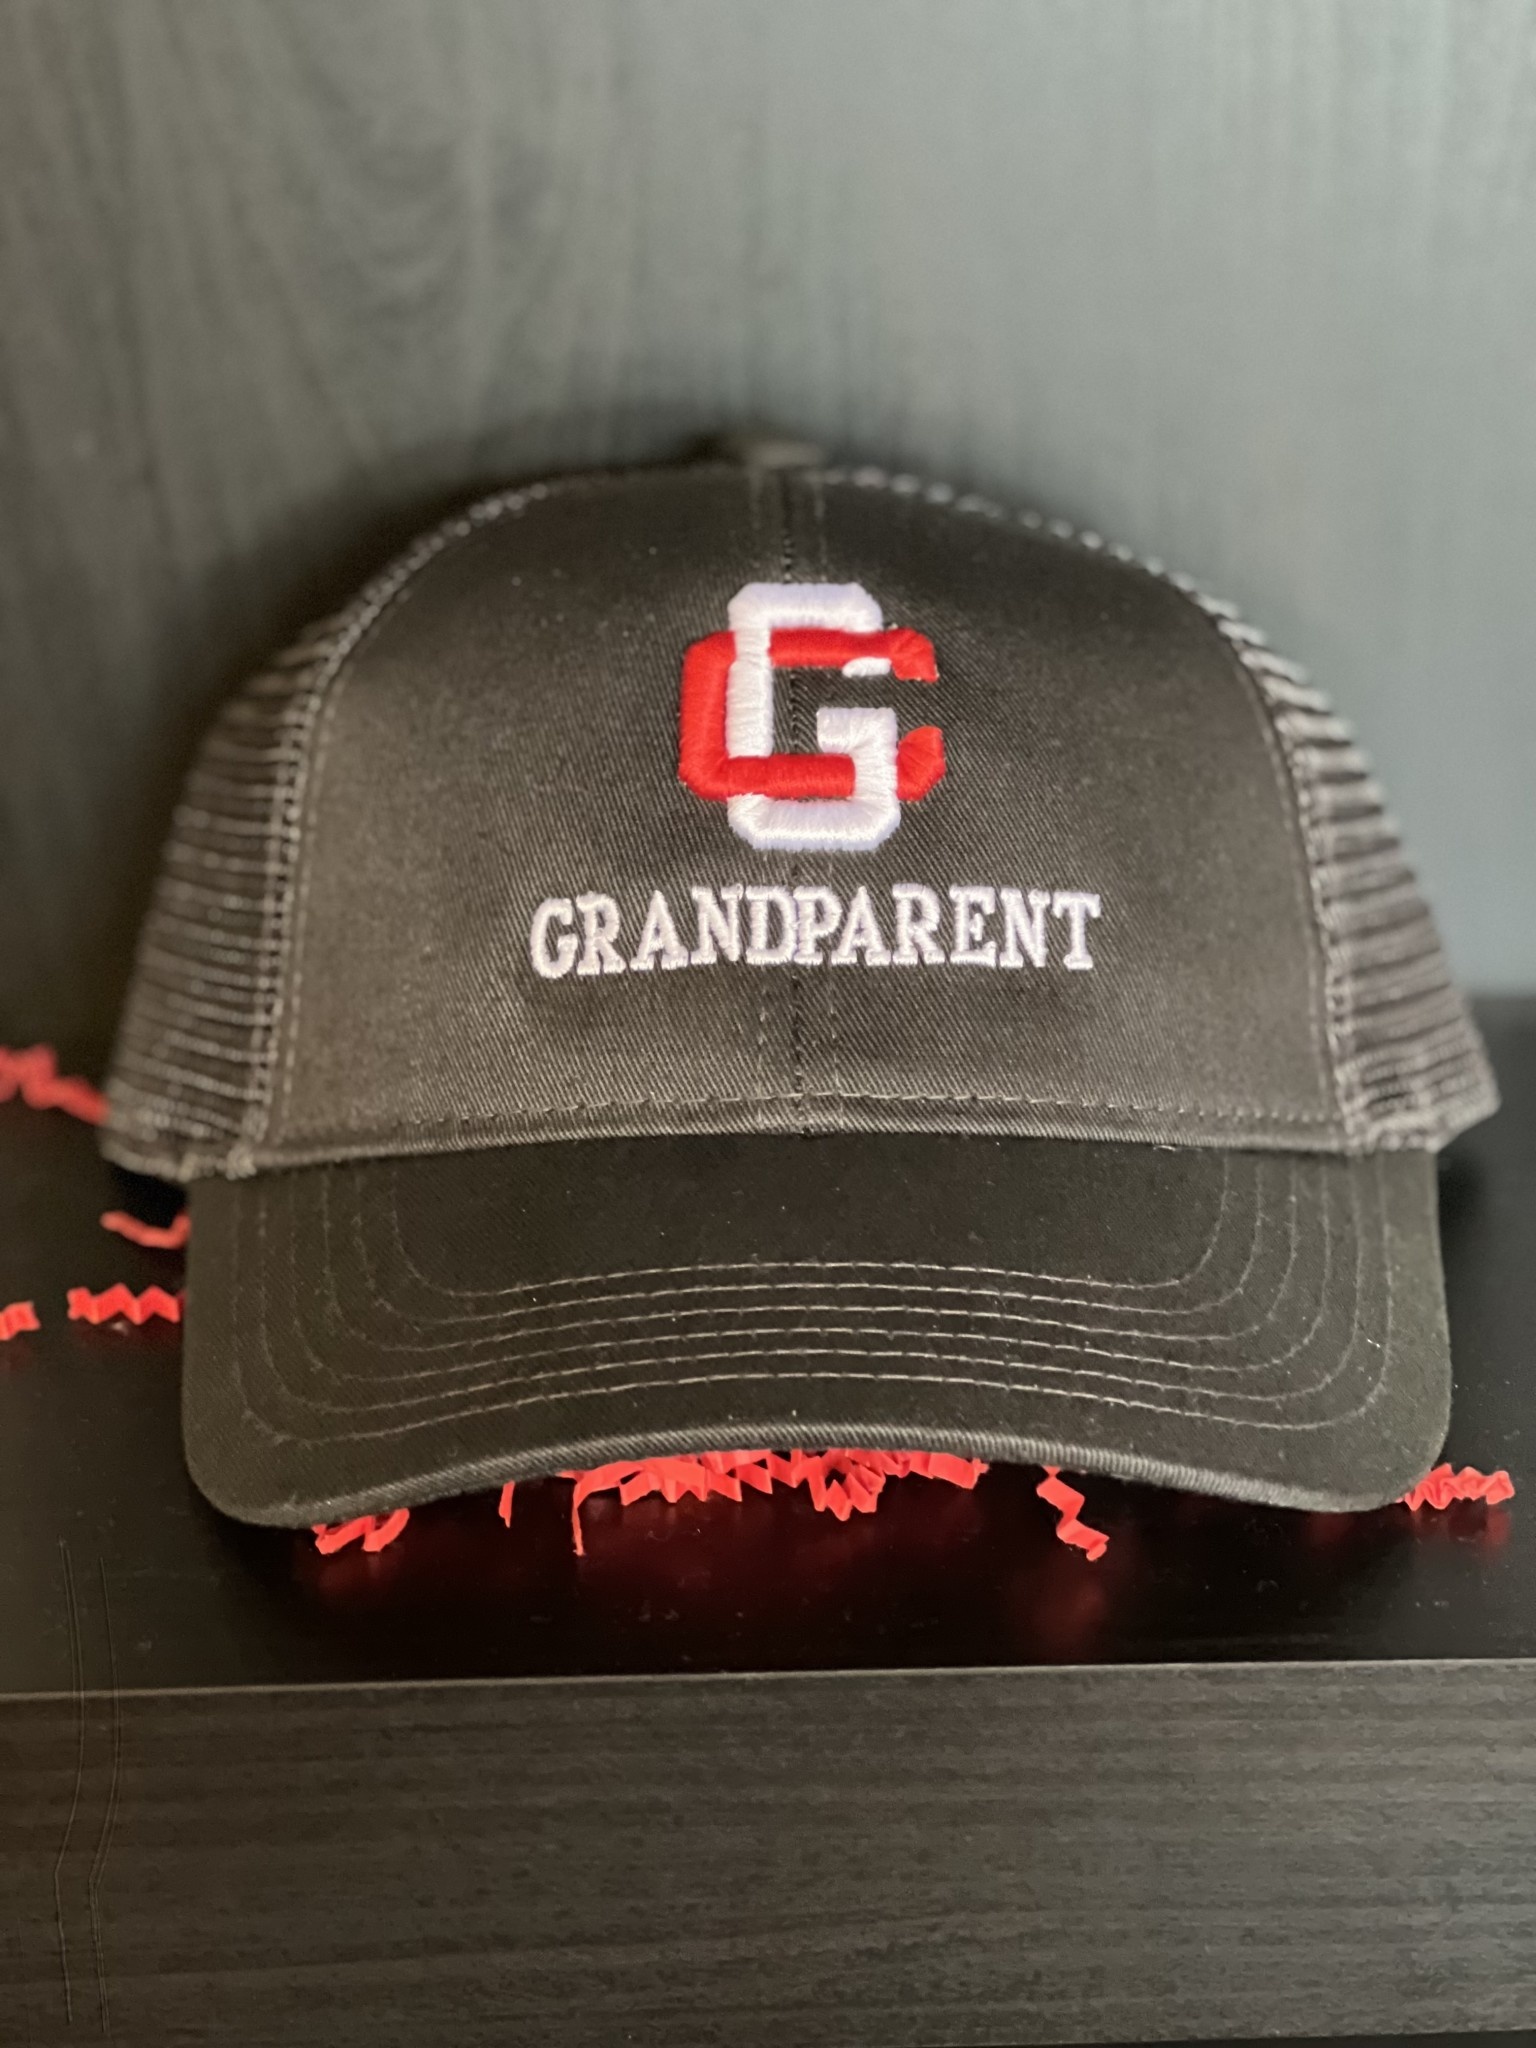 Z GC Grandparent Cap - Black